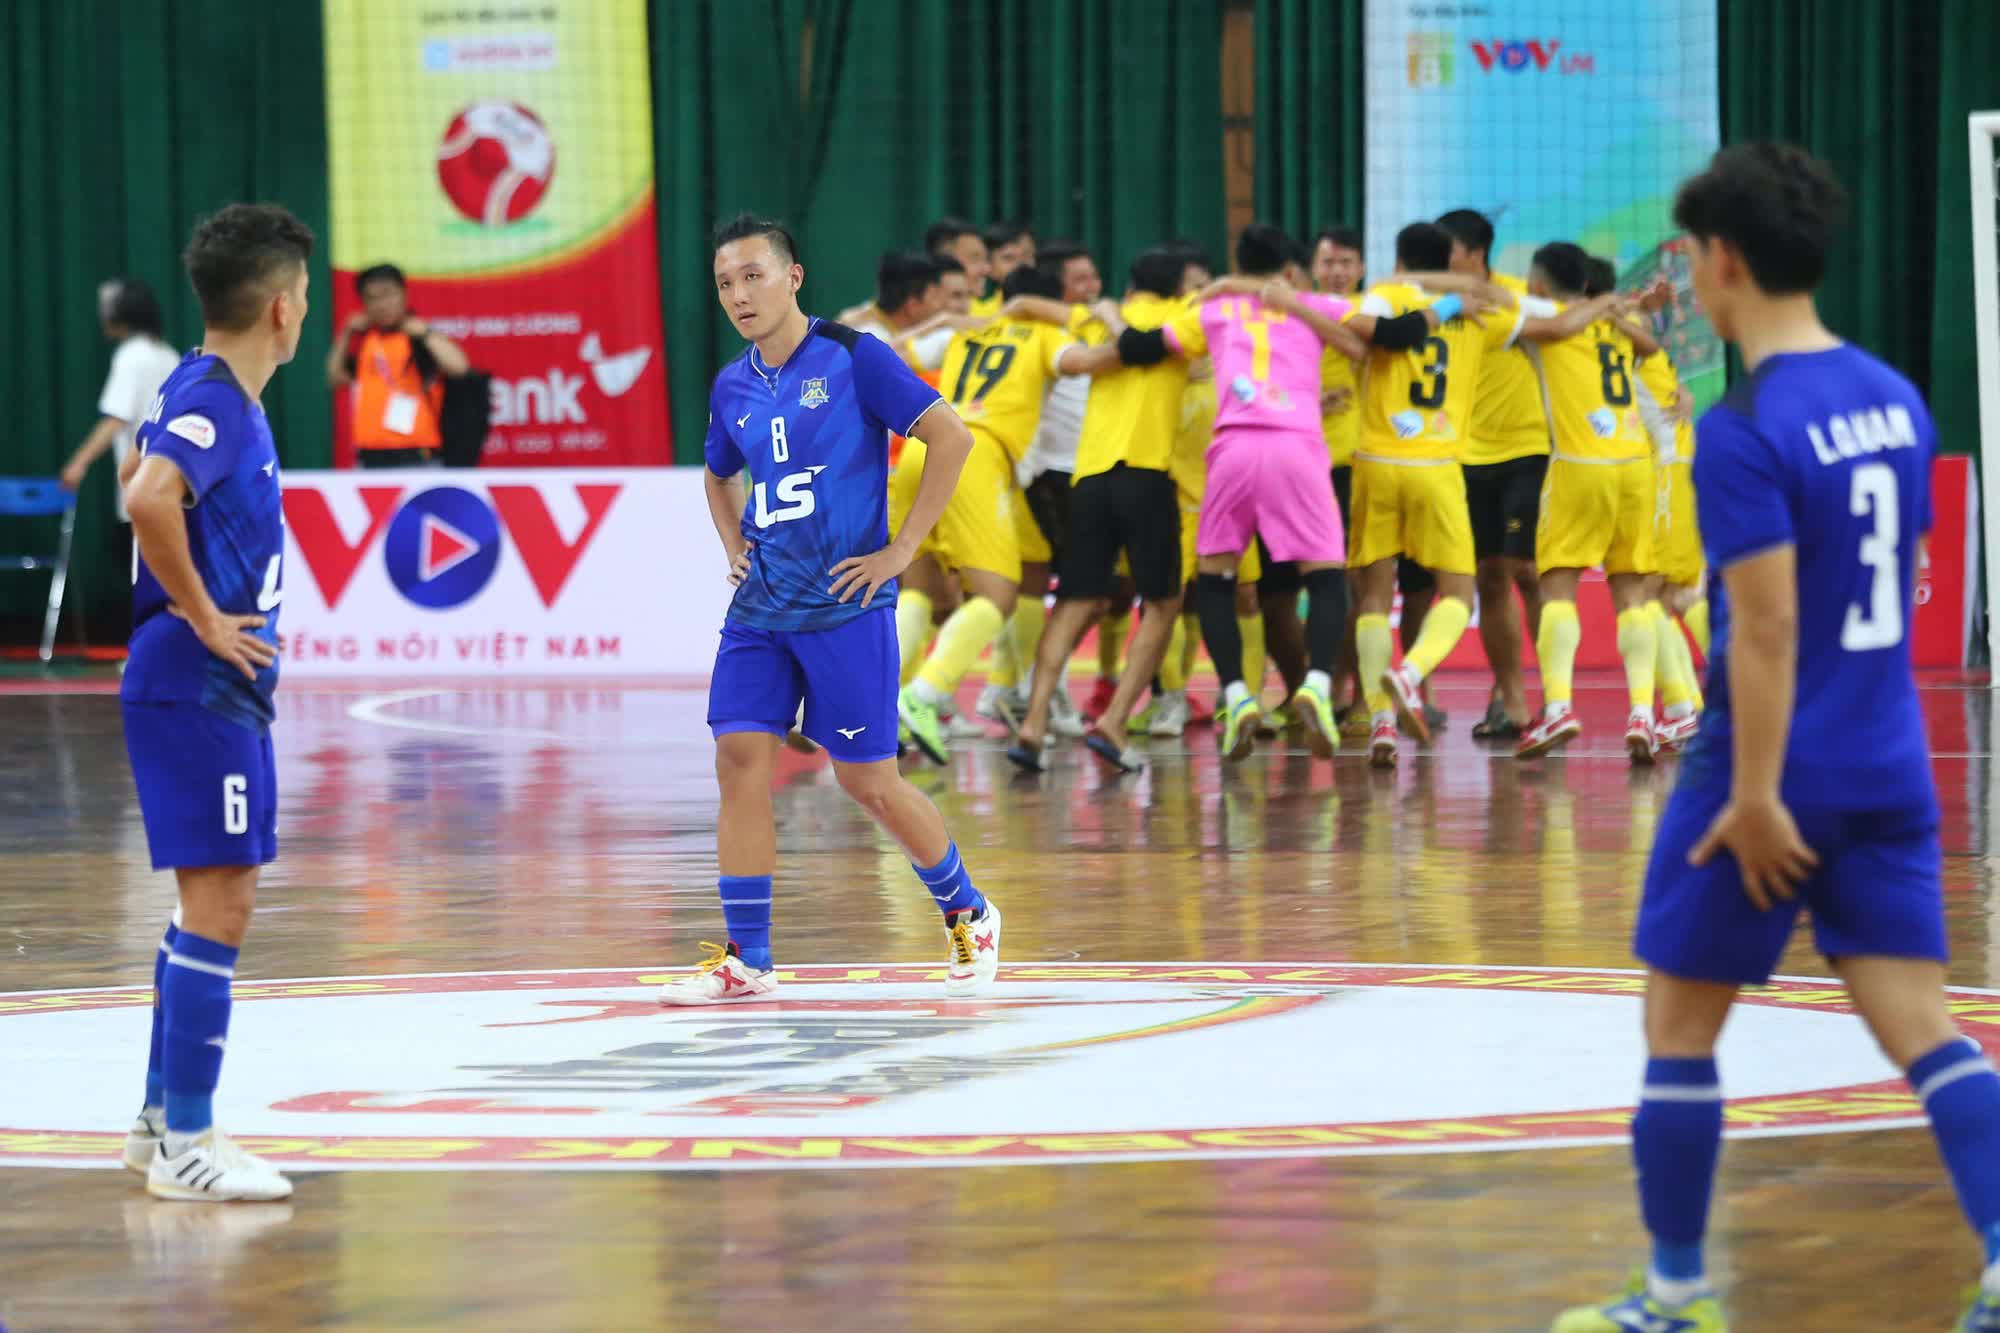 Hồ Văn Ý và cầu thủ futsal Thái Sơn Nam buồn bã khi về nhì ở Cúp Quốc gia - Ảnh 5.